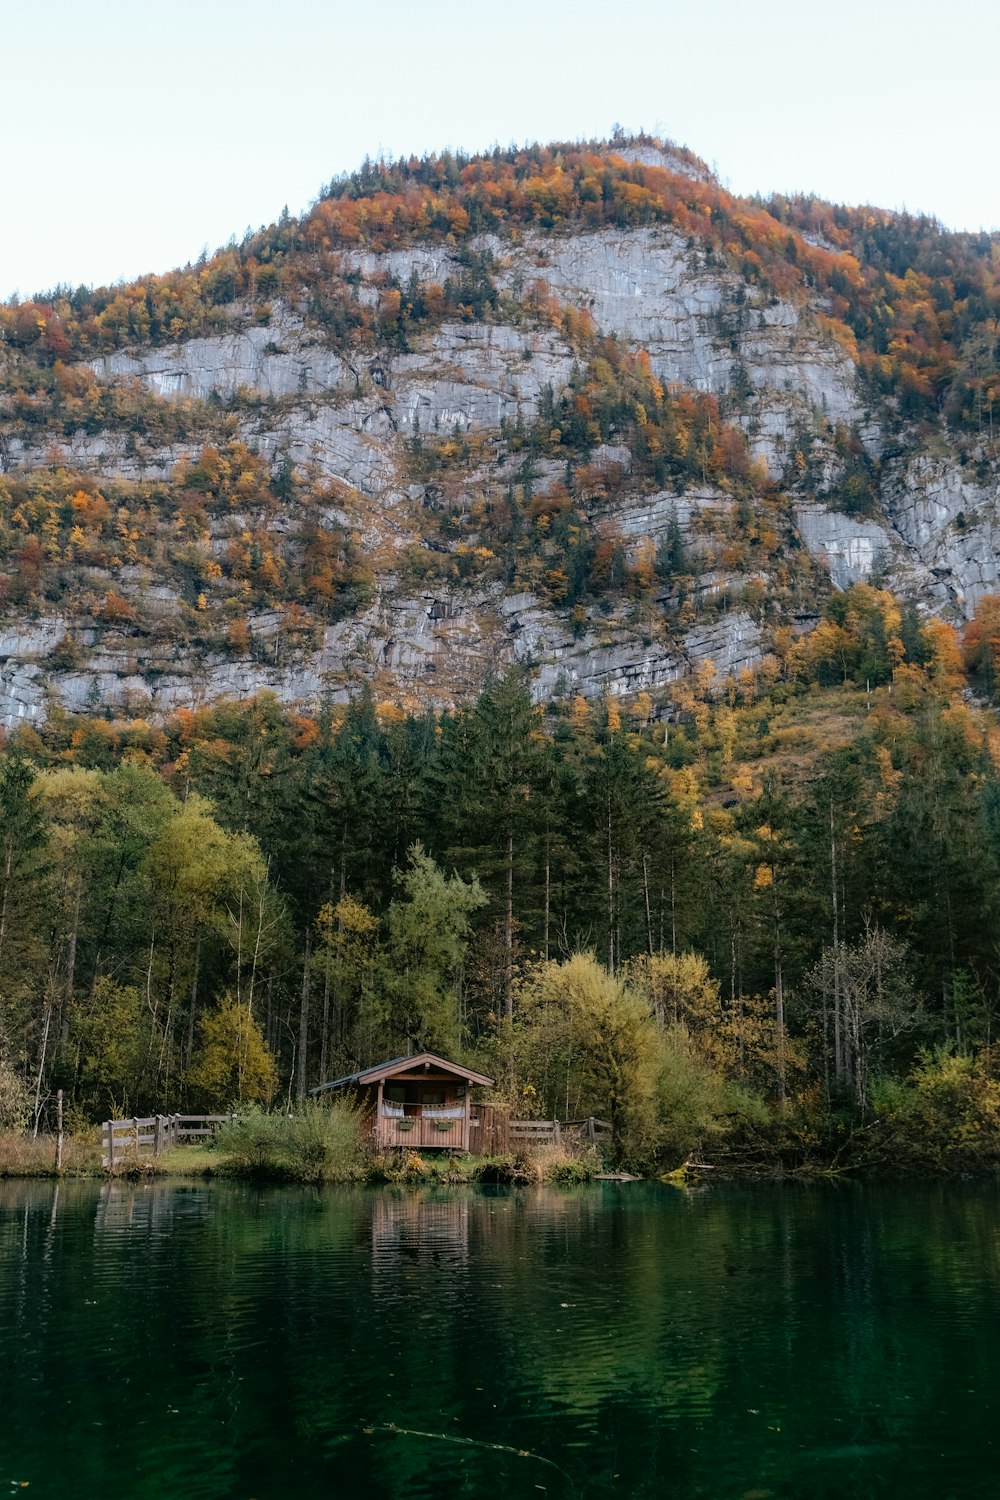 Una pequeña cabaña en una pequeña isla en medio de un lago